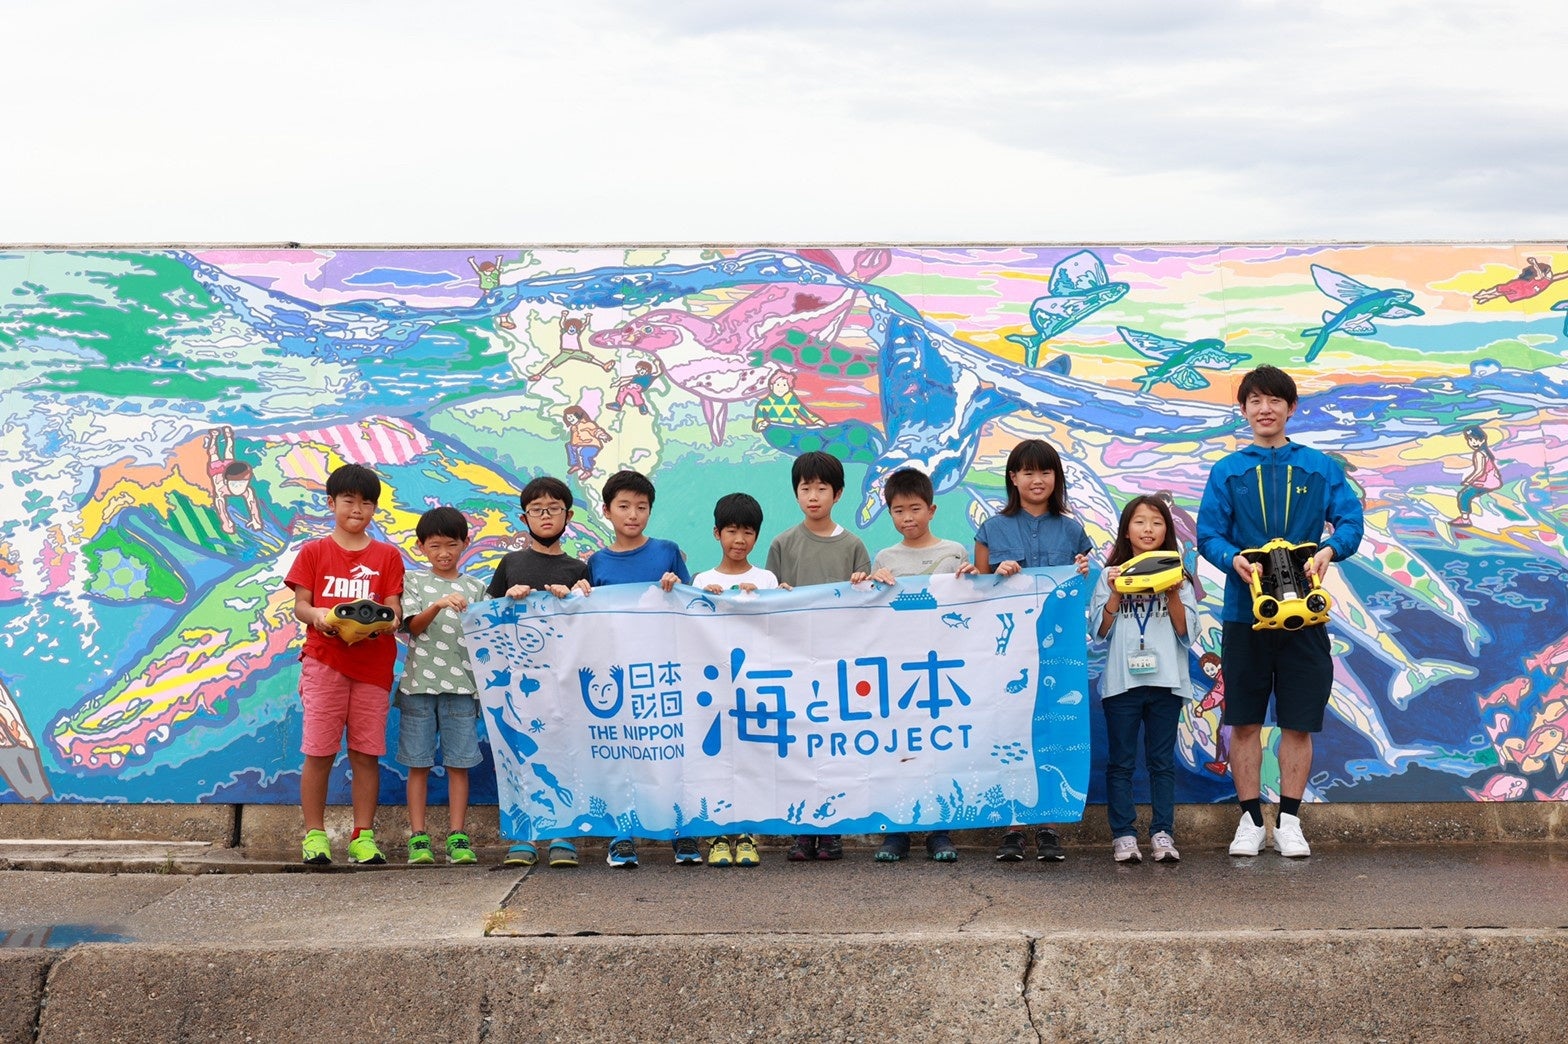 一般社団法人 日本水中ドローン協会、水中ドローン体験会×地域学習(SDGs)【水中ドローンで知る「私たちの海」】の開催を発表。2022年は全国10ヵ所でのサブ画像2_2021鳥取開催時集合写真